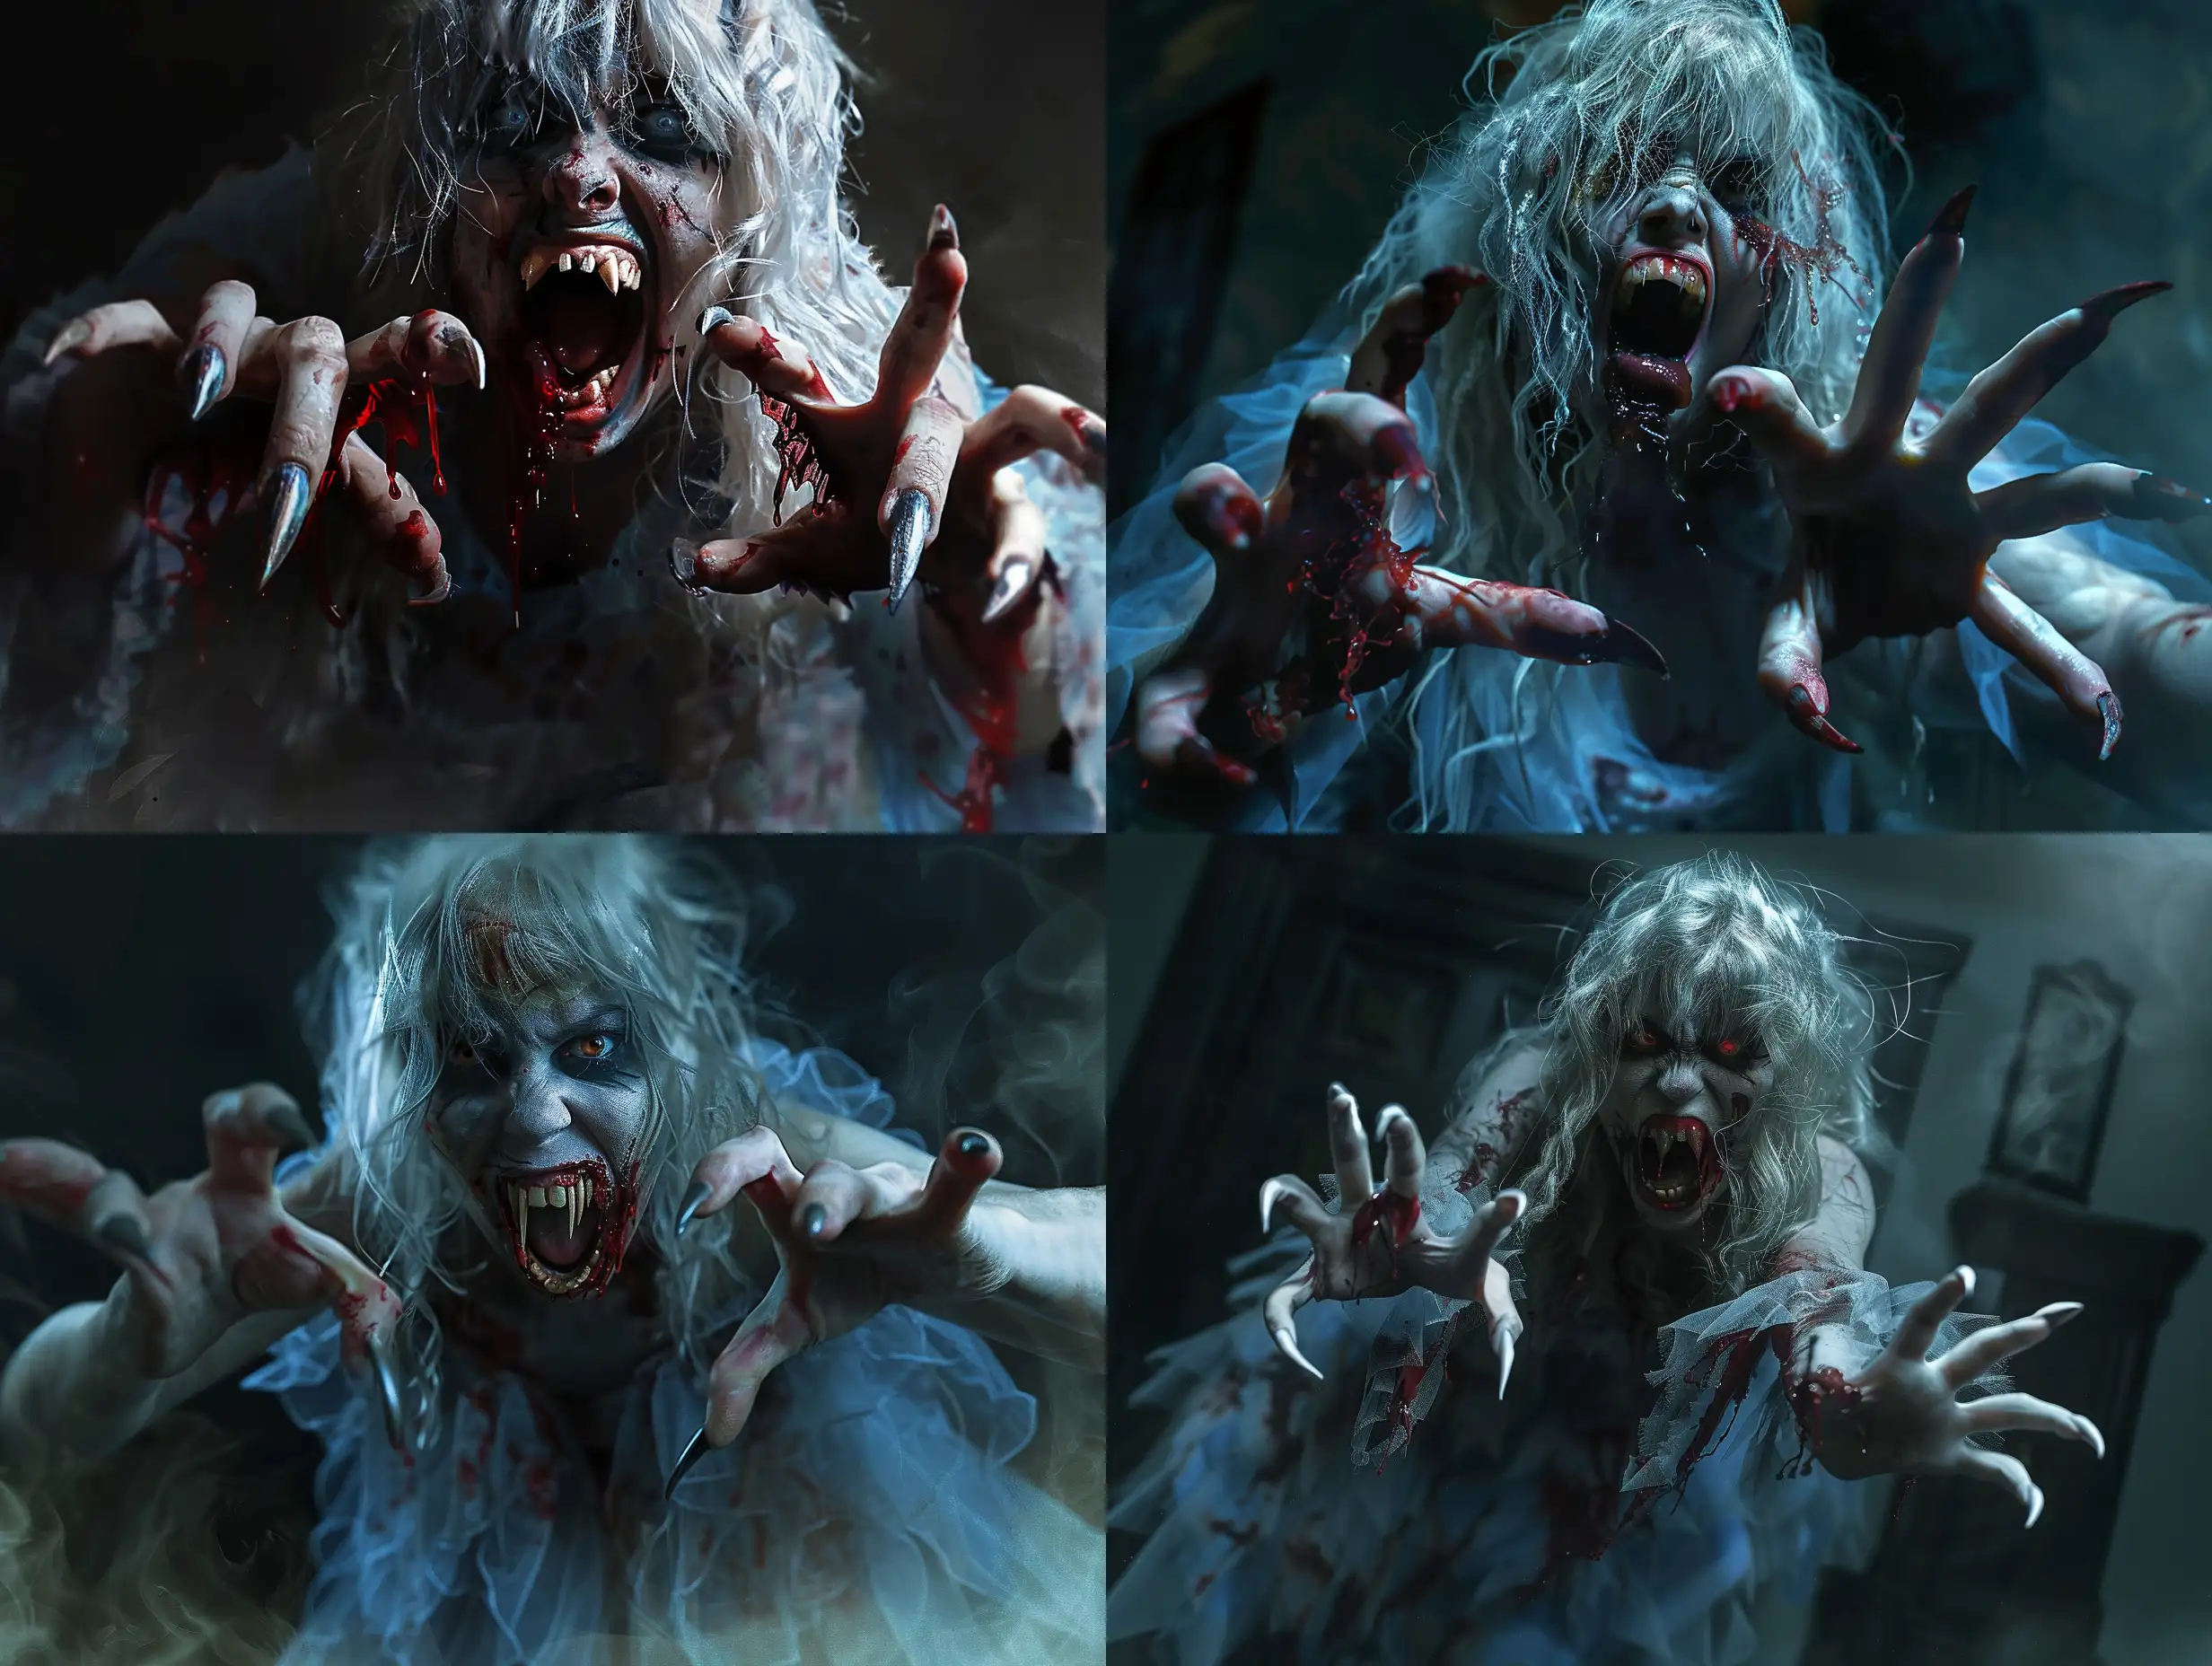 HyperRealistic-Monstrous-Female-Vampire-Portrait-in-Terrifying-Night-Scene